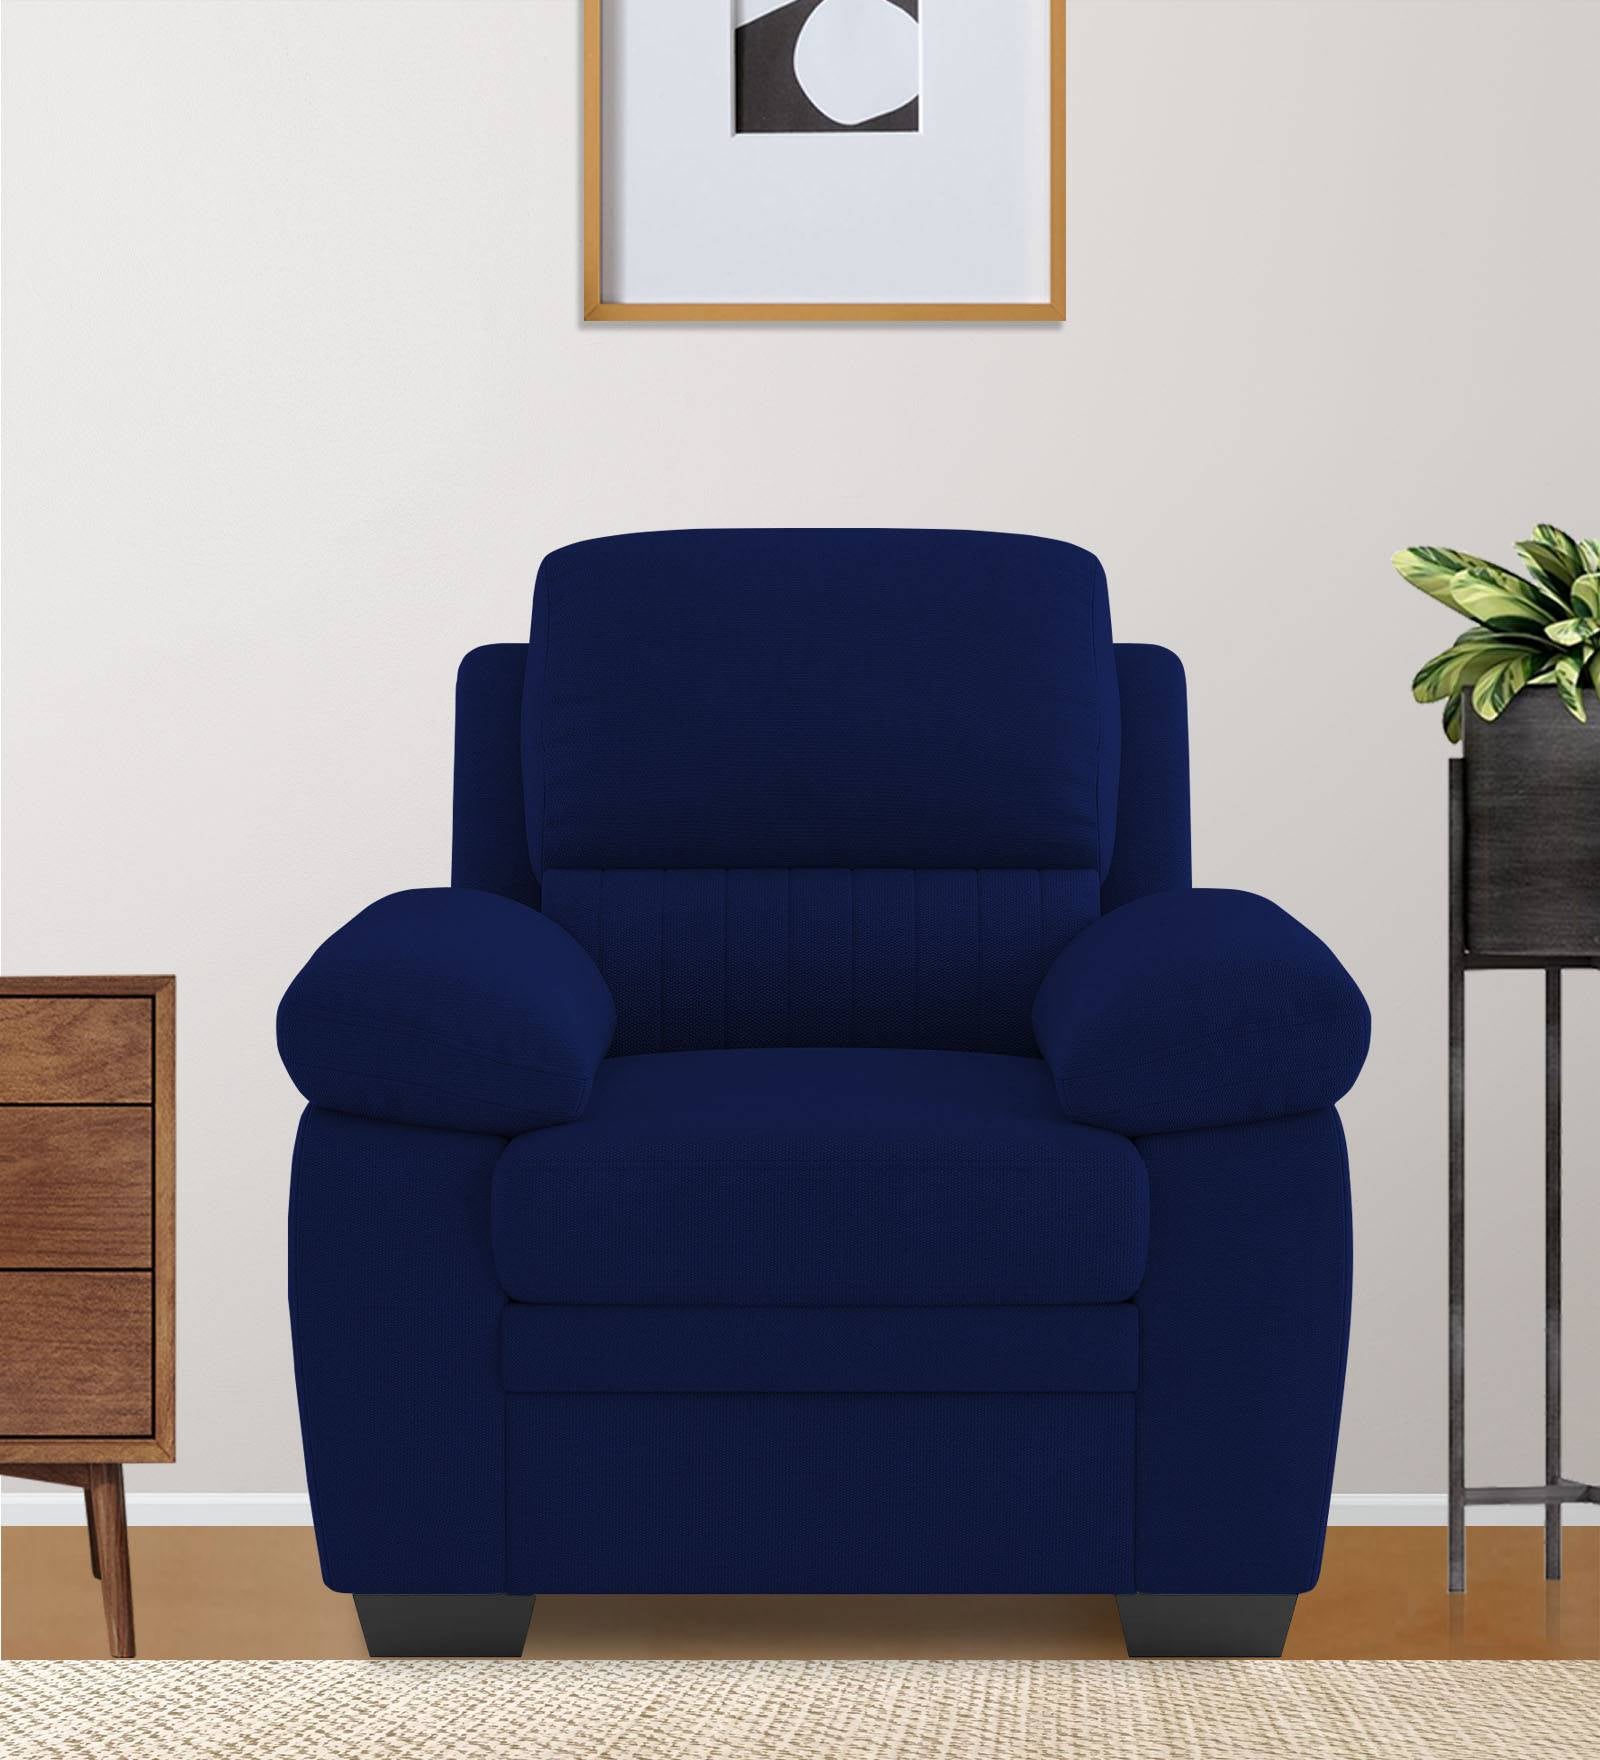 Miranda Velvet 1 Seater Sofa in Royal blue Colour